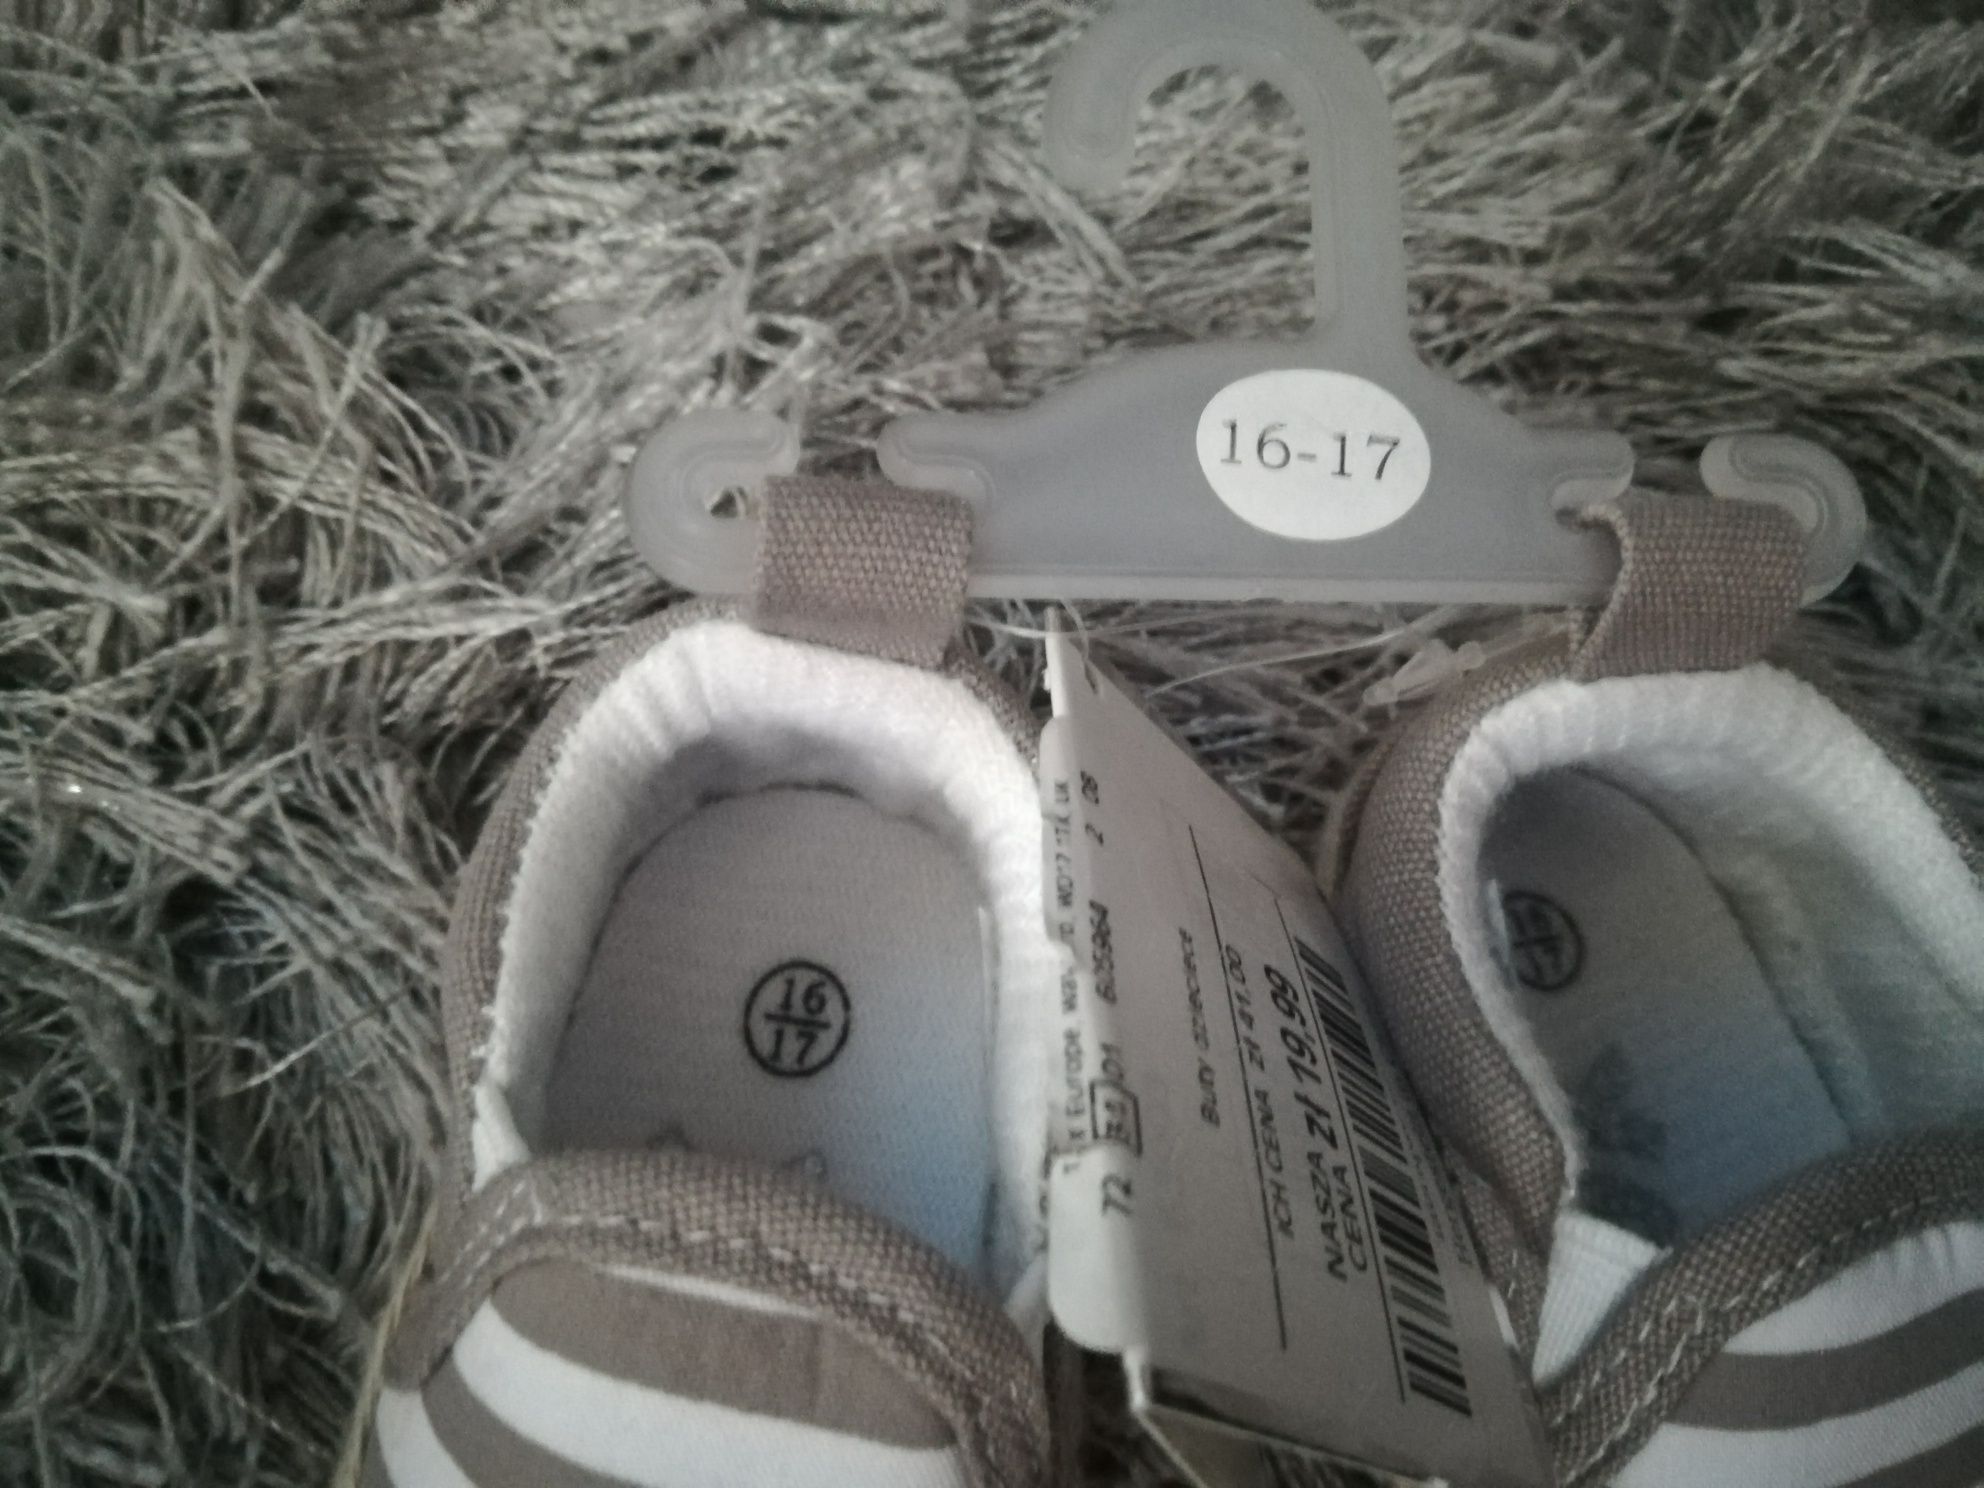 Buty, buciki dla niemowlaka rozmiar 16-17